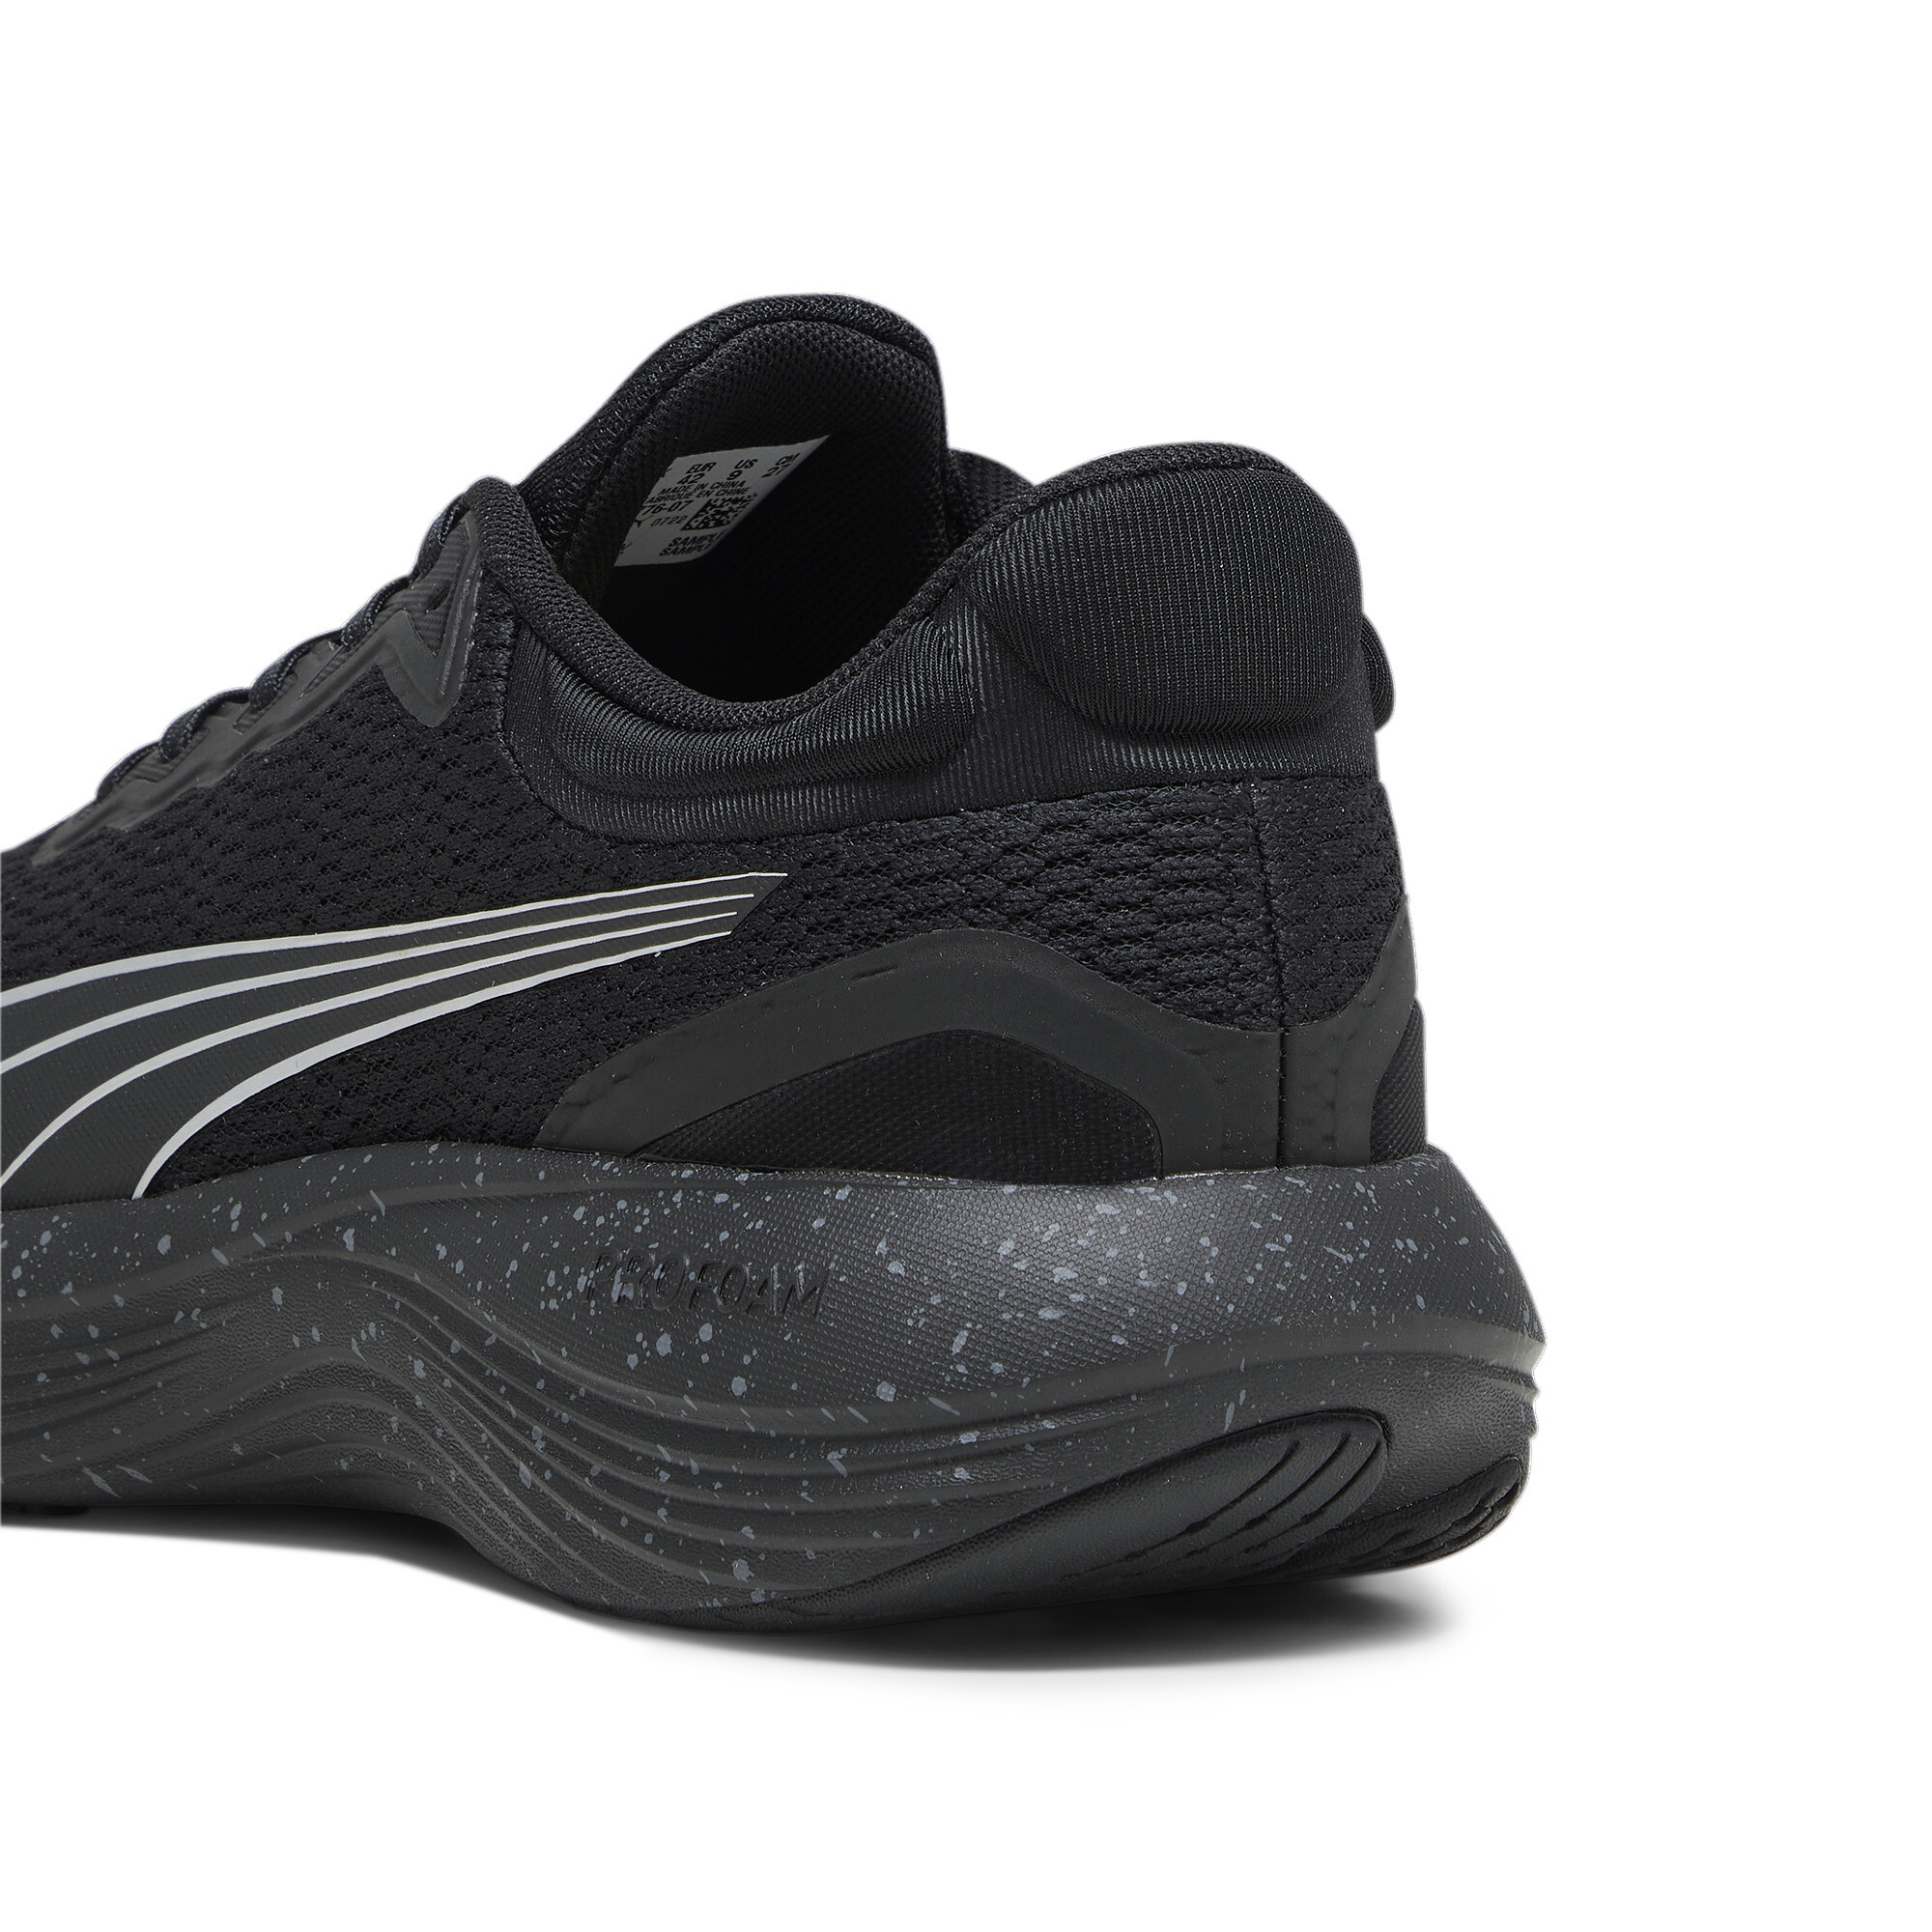 Men's PUMA Scend Pro Running Shoes In Black, Size EU 40